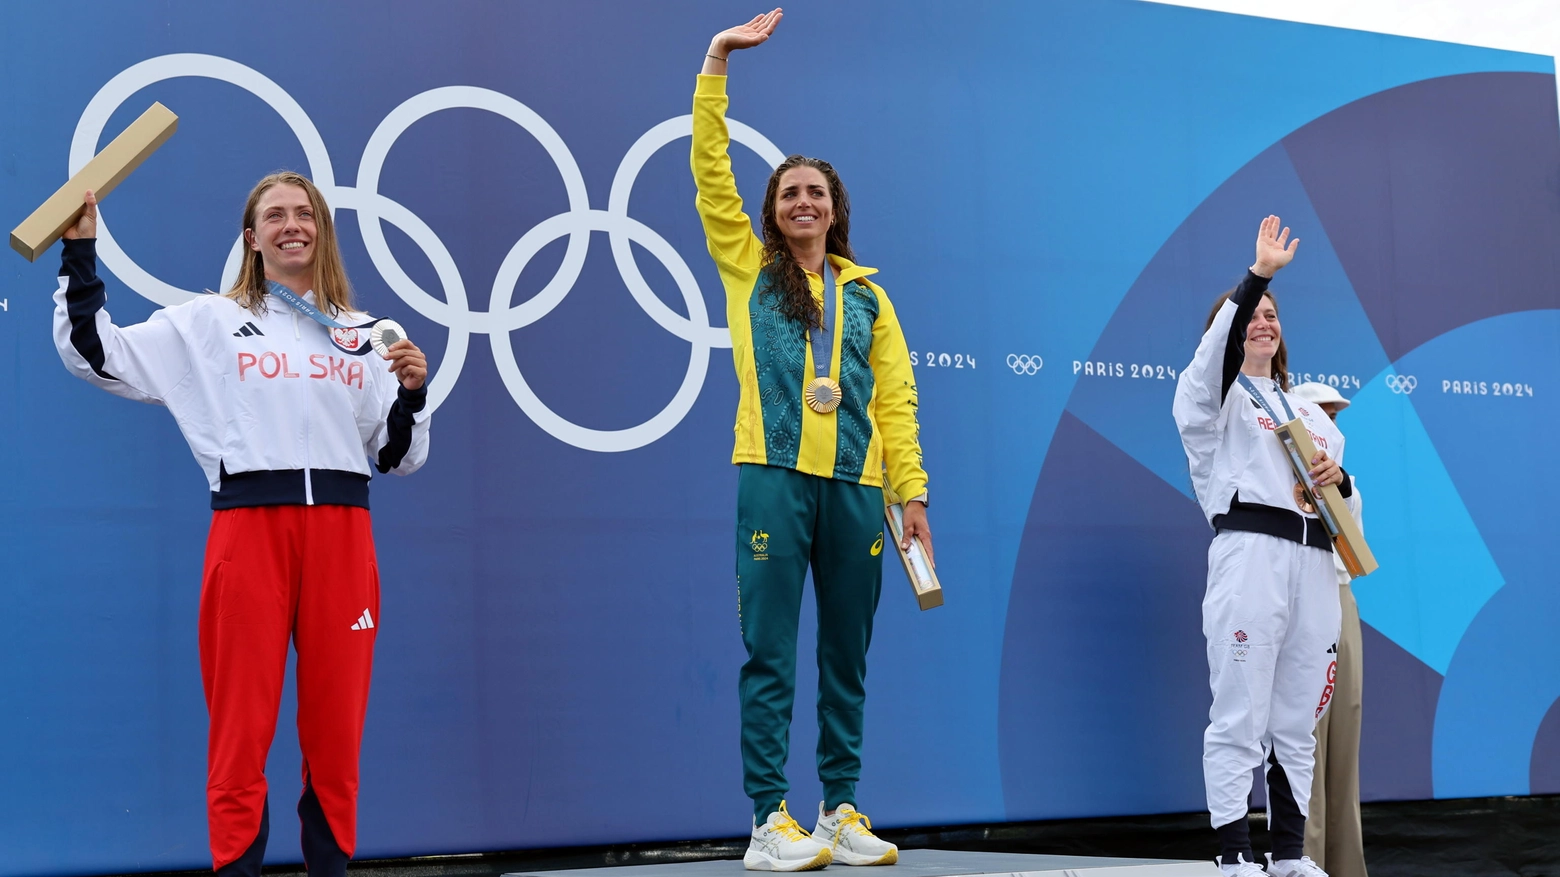 Il podio del kayak femminile alle Olimpiadi di Parigi 2024: le atlete con la medaglia e il 'misterioso' pacchetto (Ansa)